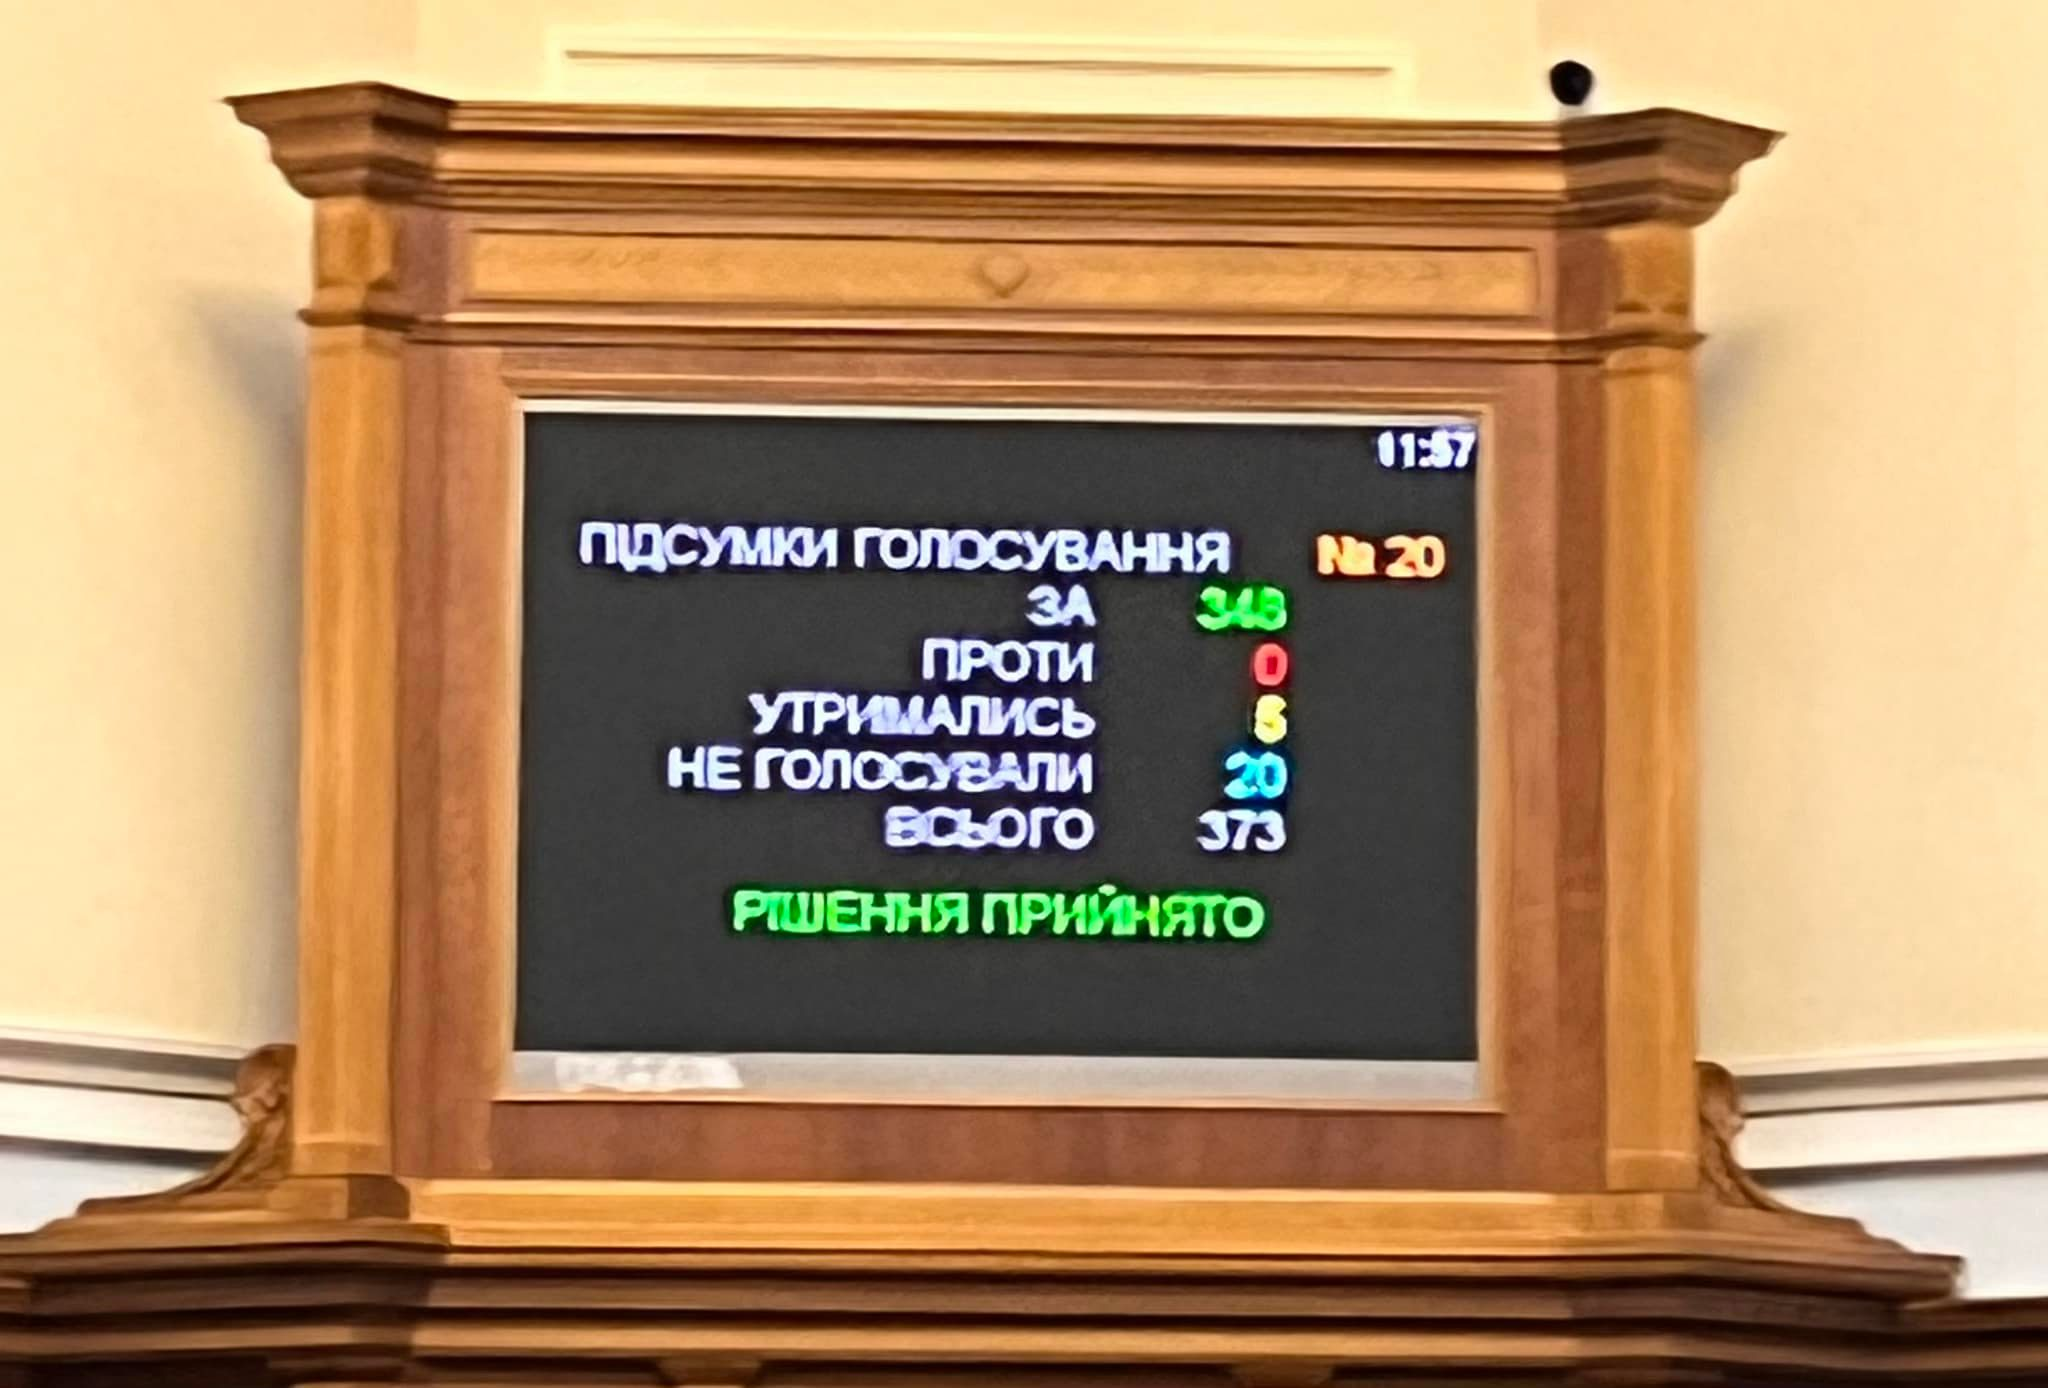 За переименование города во Владимир проголосовали 348 нардепов